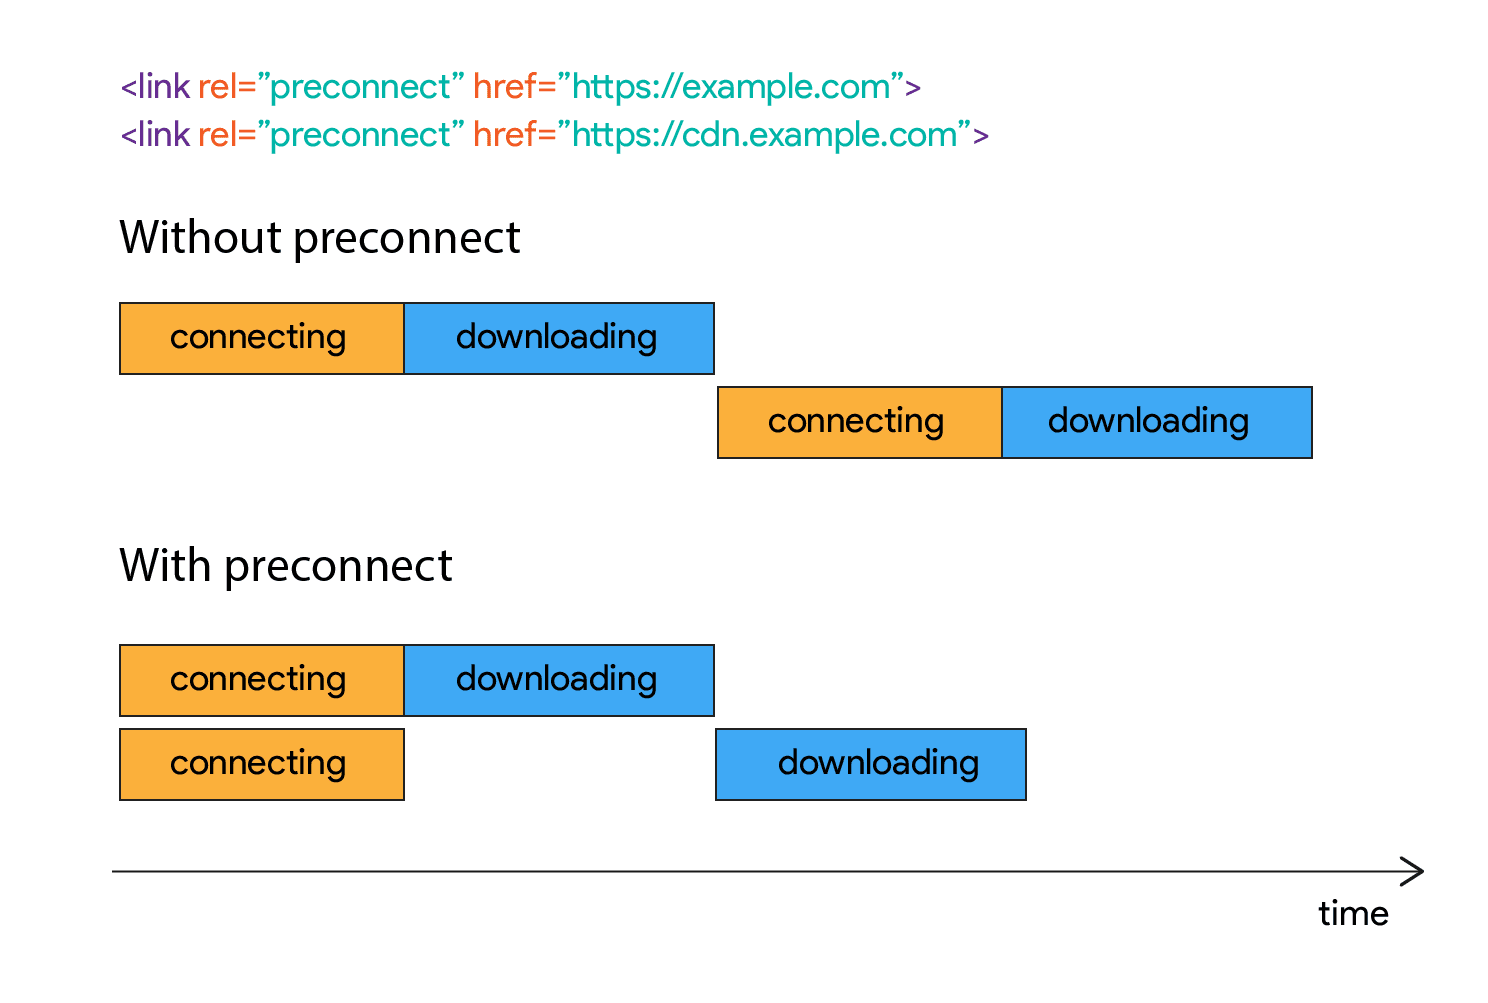 Sơ đồ cho thấy cách quá trình tải xuống không bắt đầu trong một khoảng thời gian sau khi thiết lập kết nối.